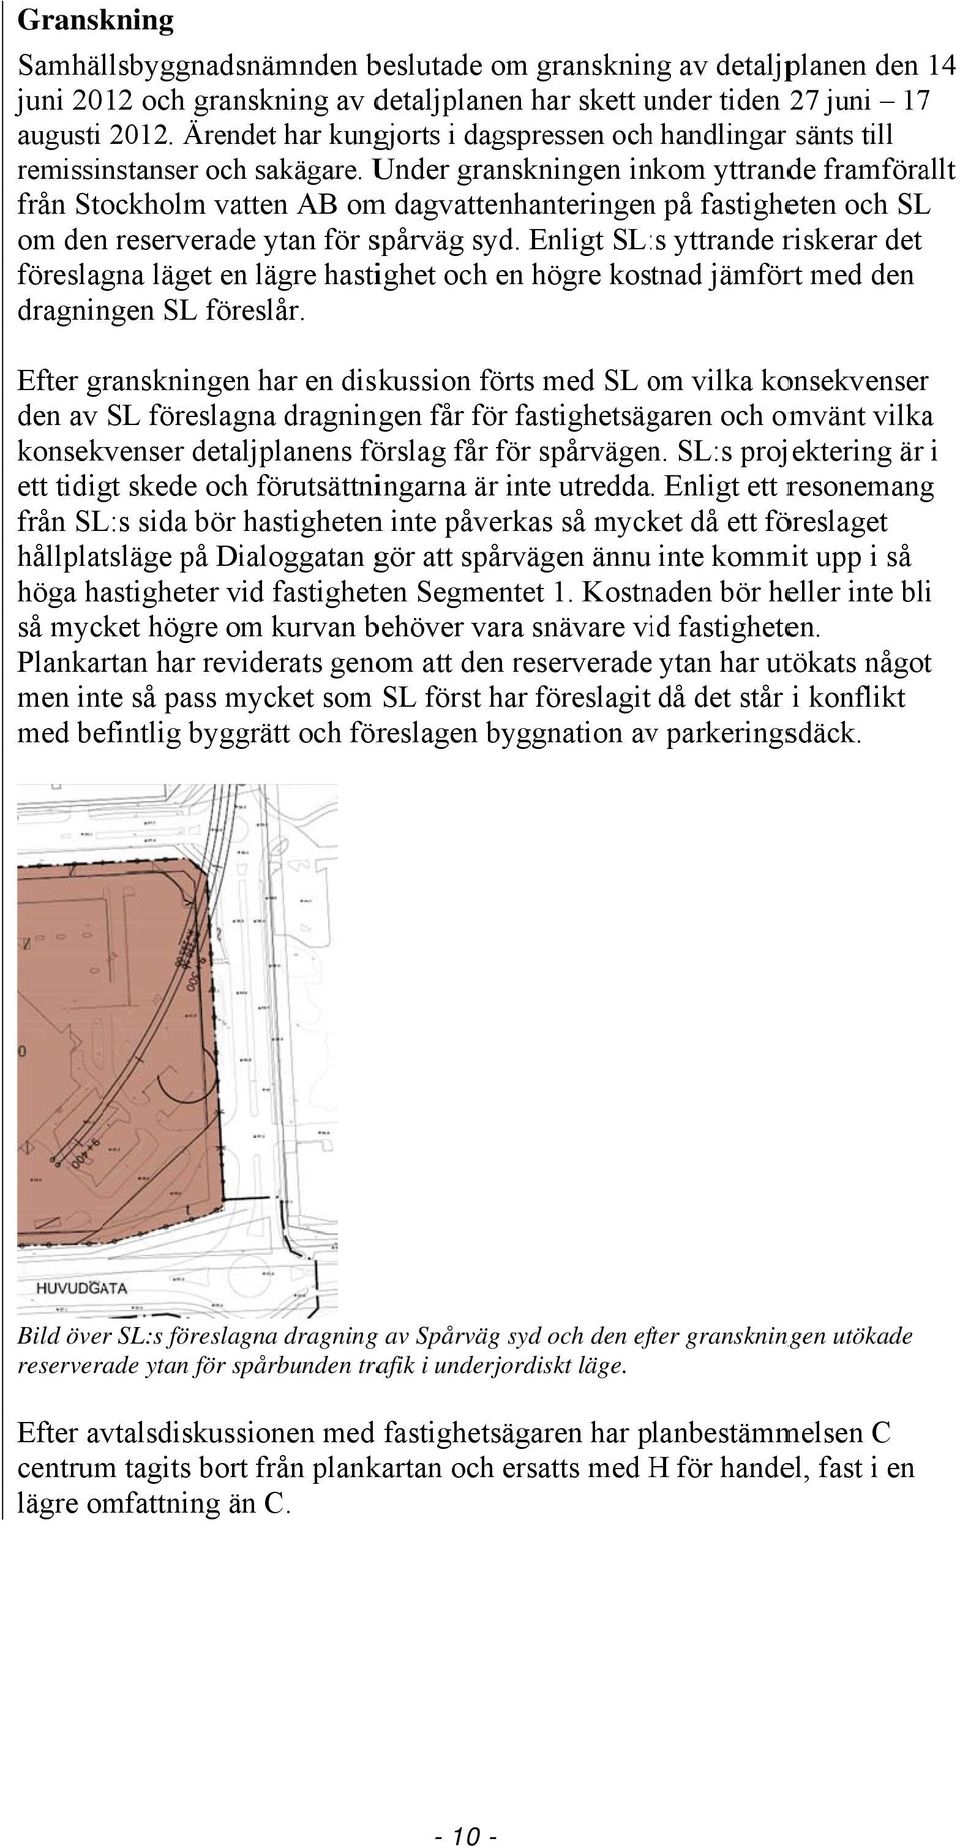 Under granskningen inkom yttrande framförallt från Stockholm vatten AB om dagvattenhanteringenn på fastigheten och SL om den reserverade ytan för spårväg syd.